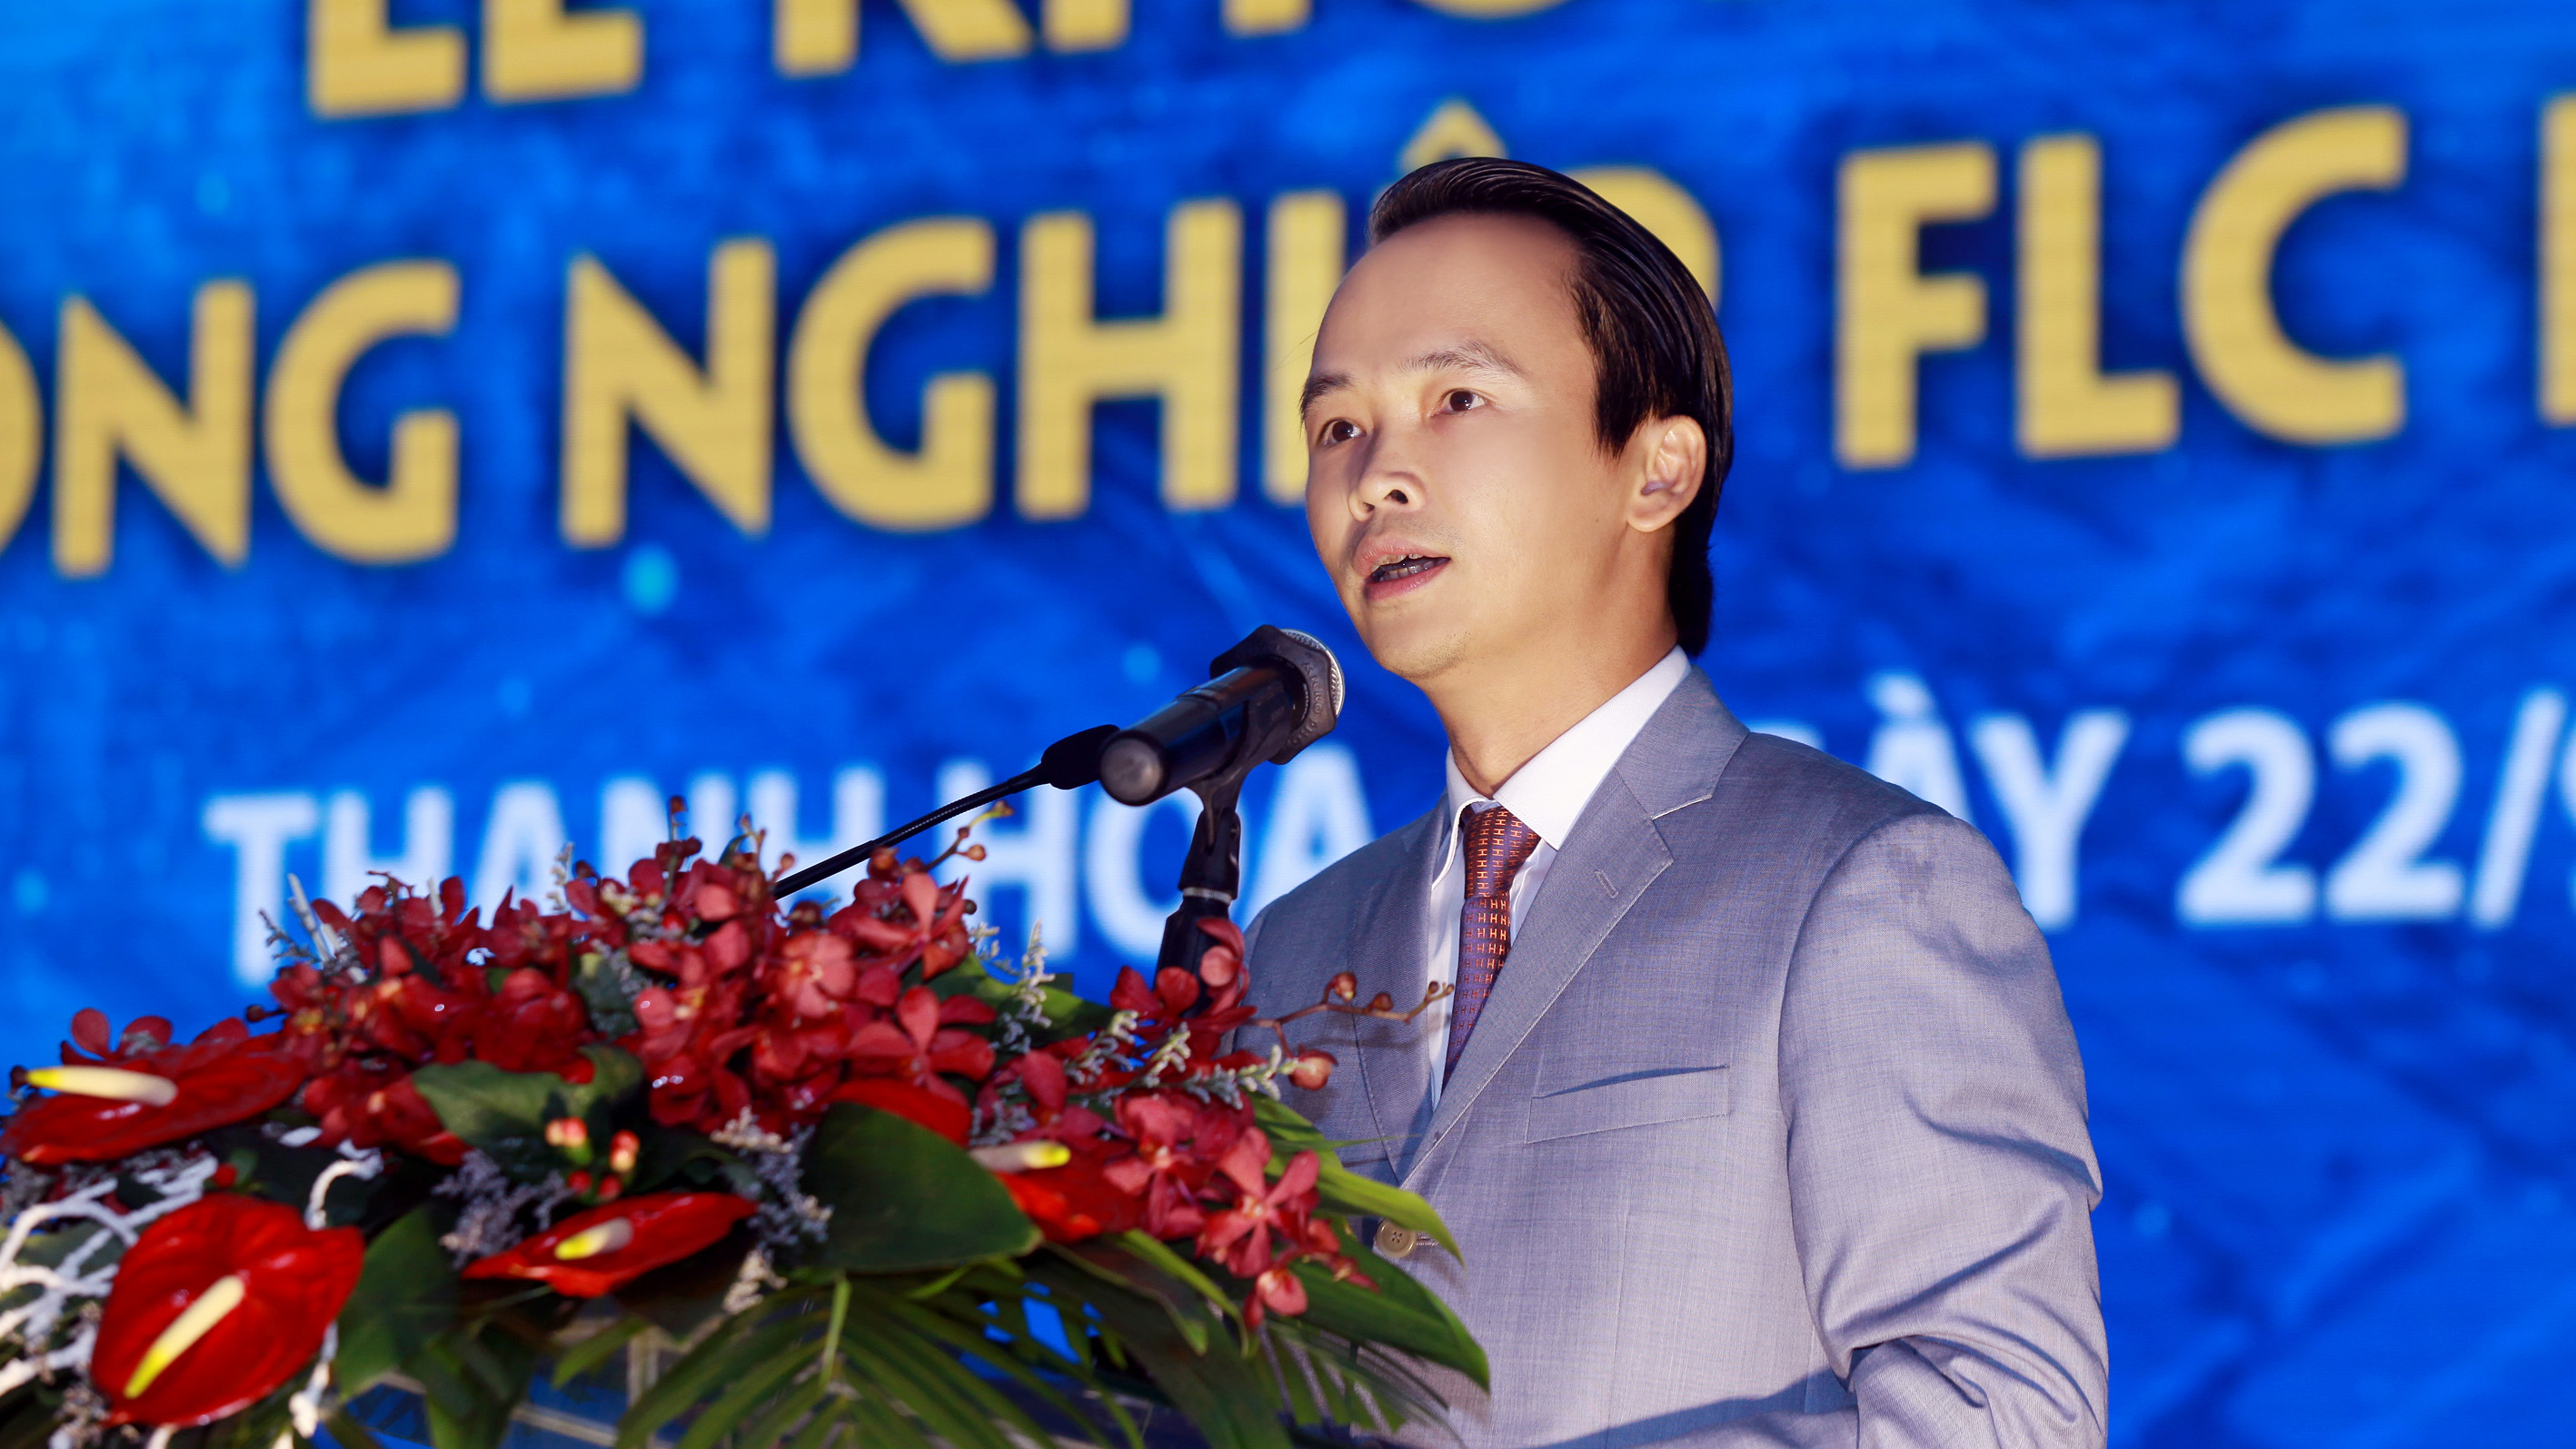 
Ông Trịnh Văn Quyết, Chủ tịch HĐQT Tập đoàn FLC phát biểu khai mạc lễ khởi công
